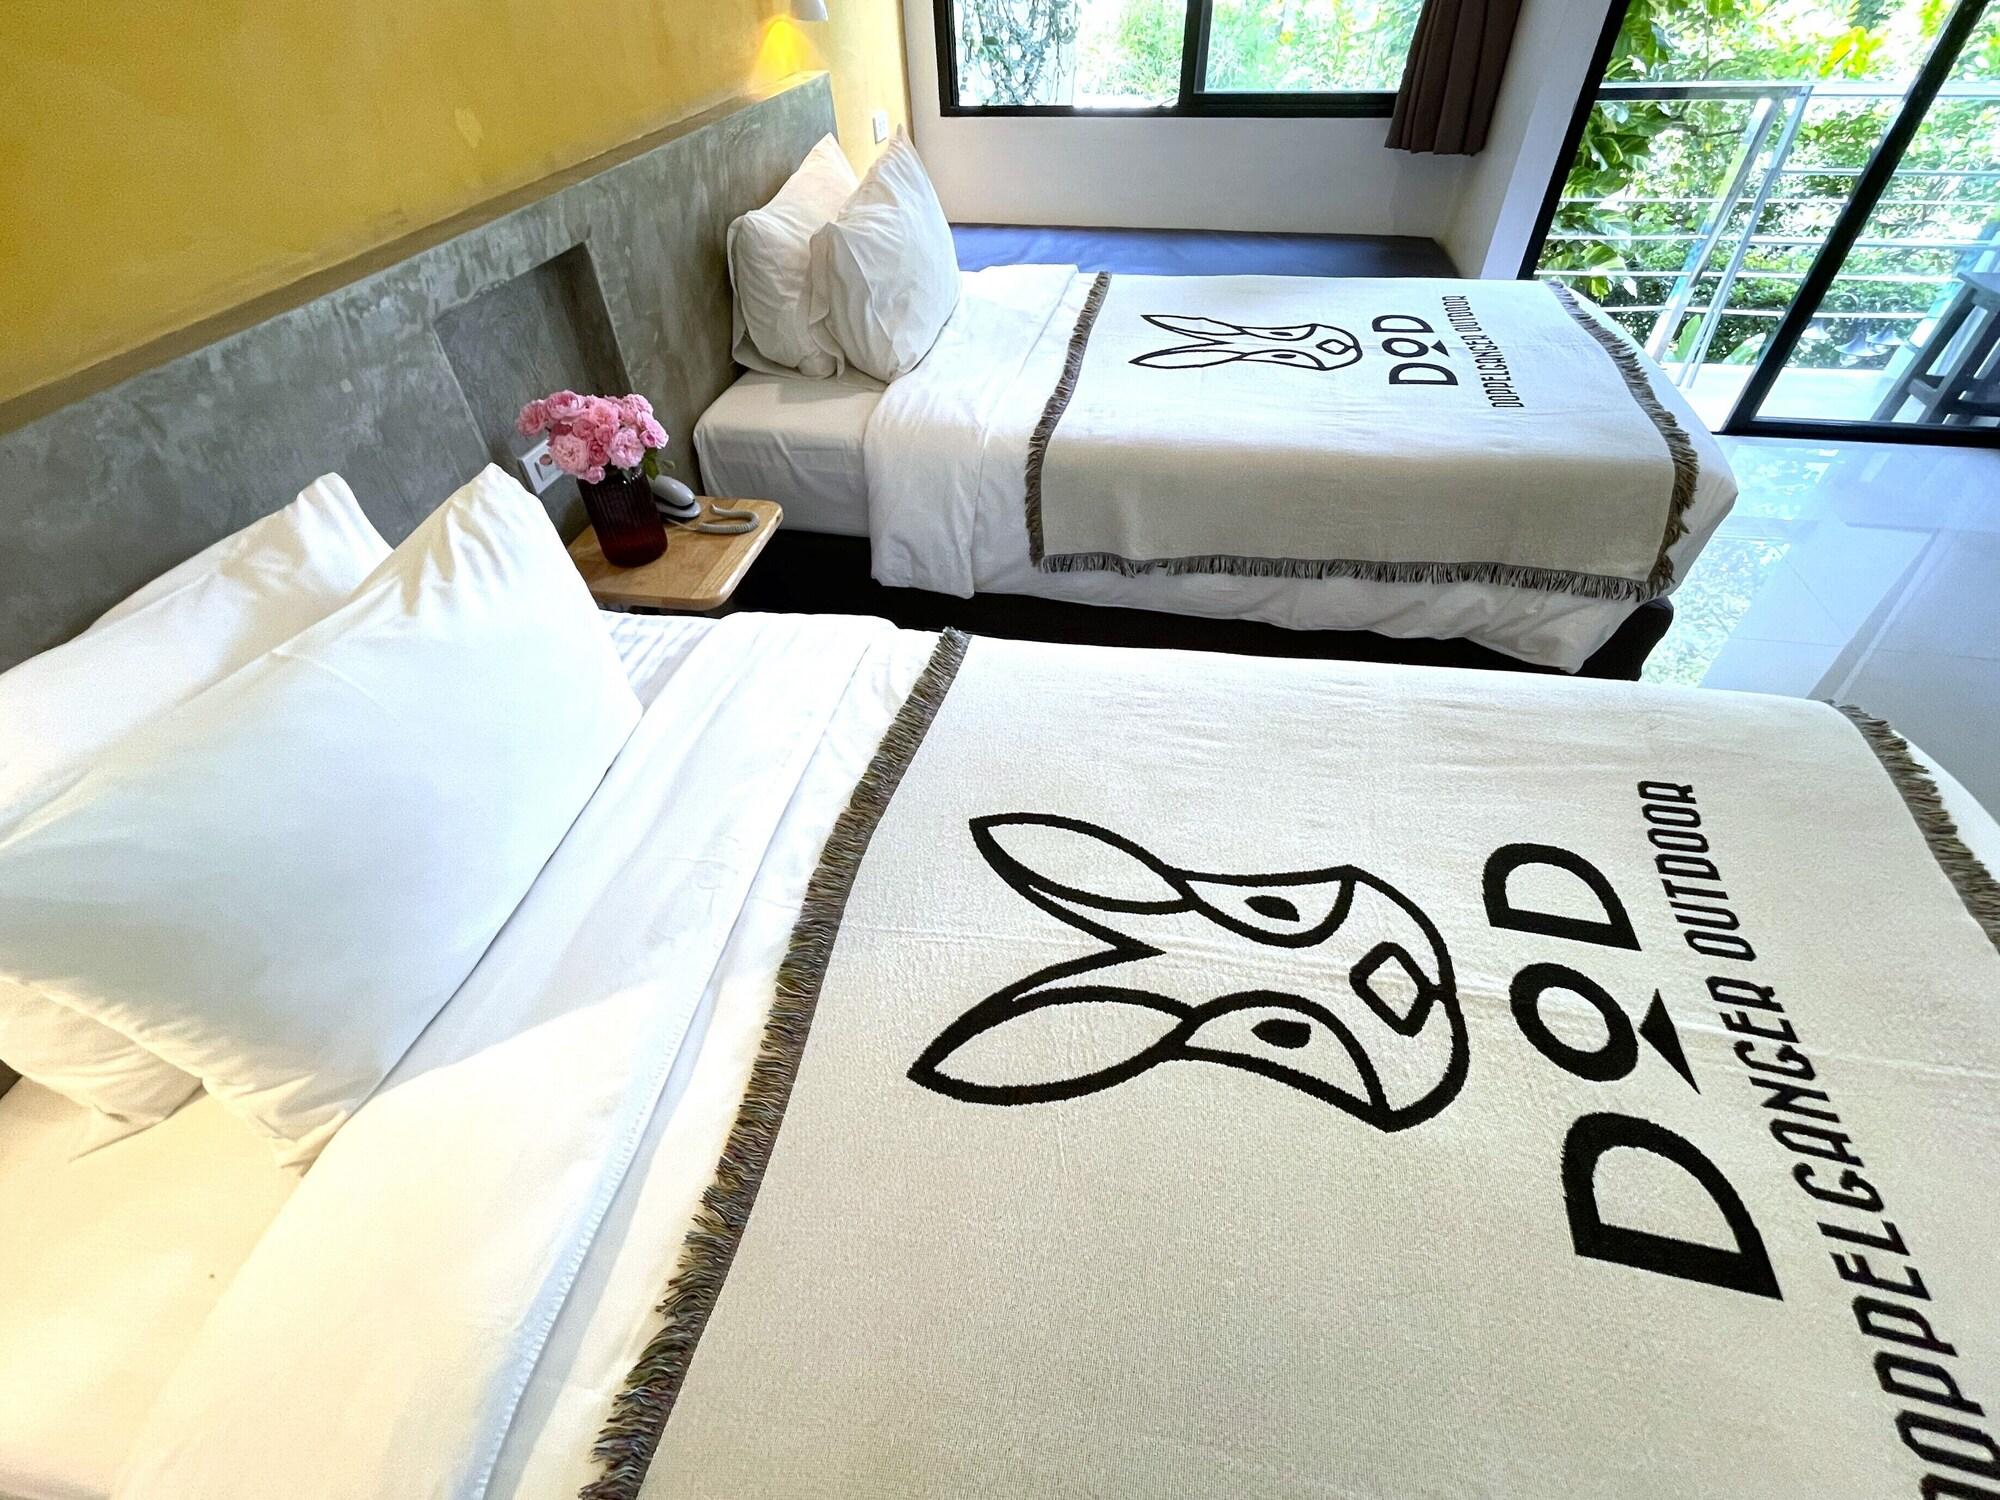 Ideo Phuket Hotel - Sha Extra Plus Nai Yang Экстерьер фото